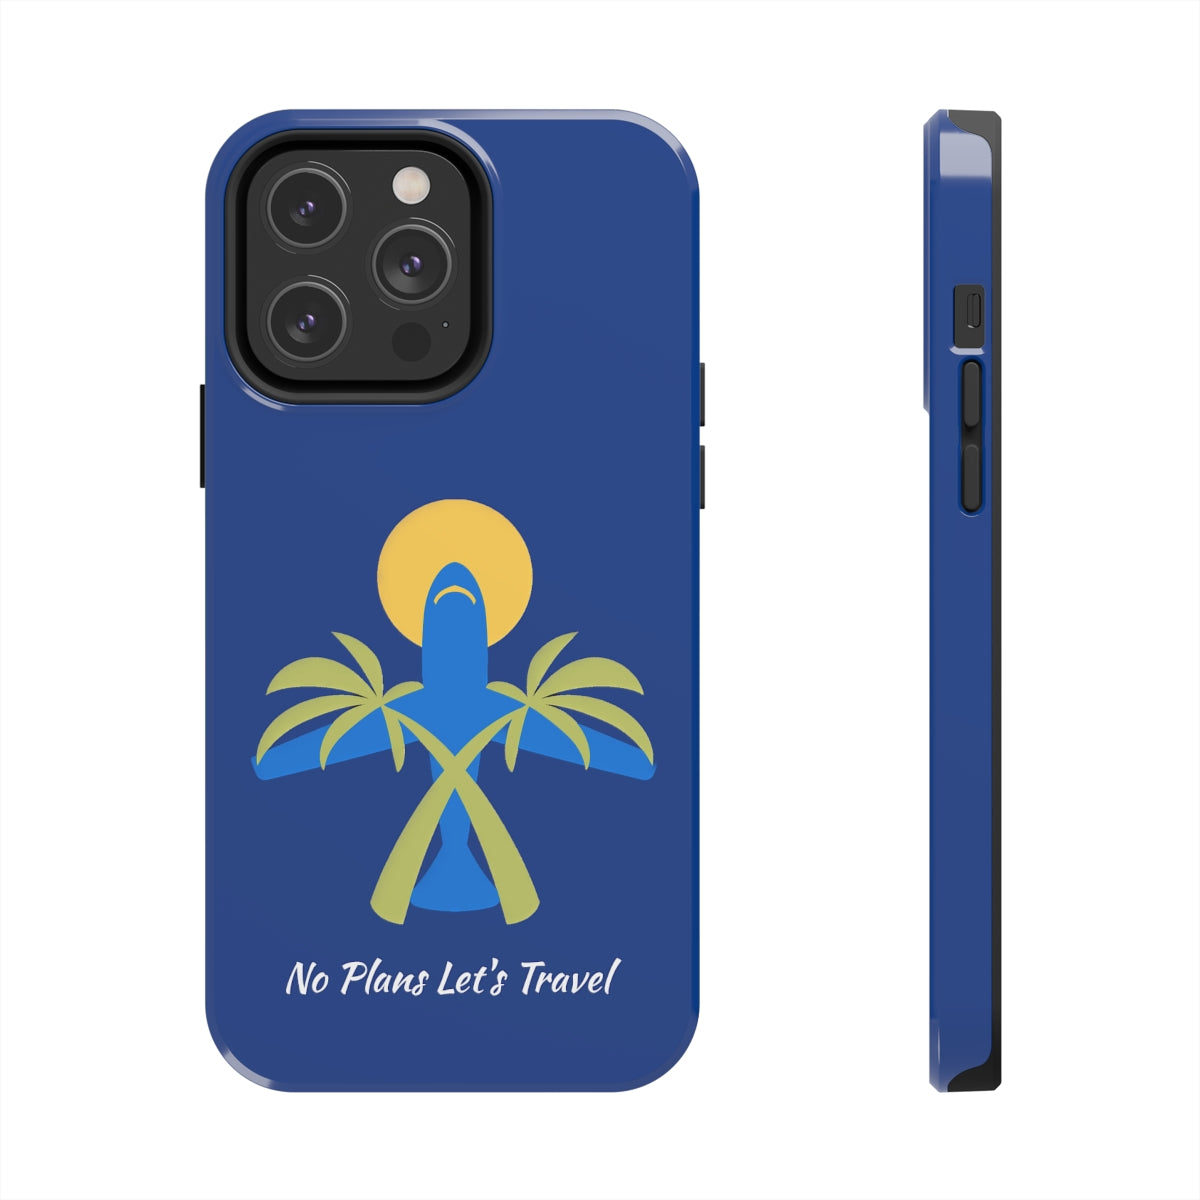 (Blue) No Plans Let's Travel Tough Phone Cases